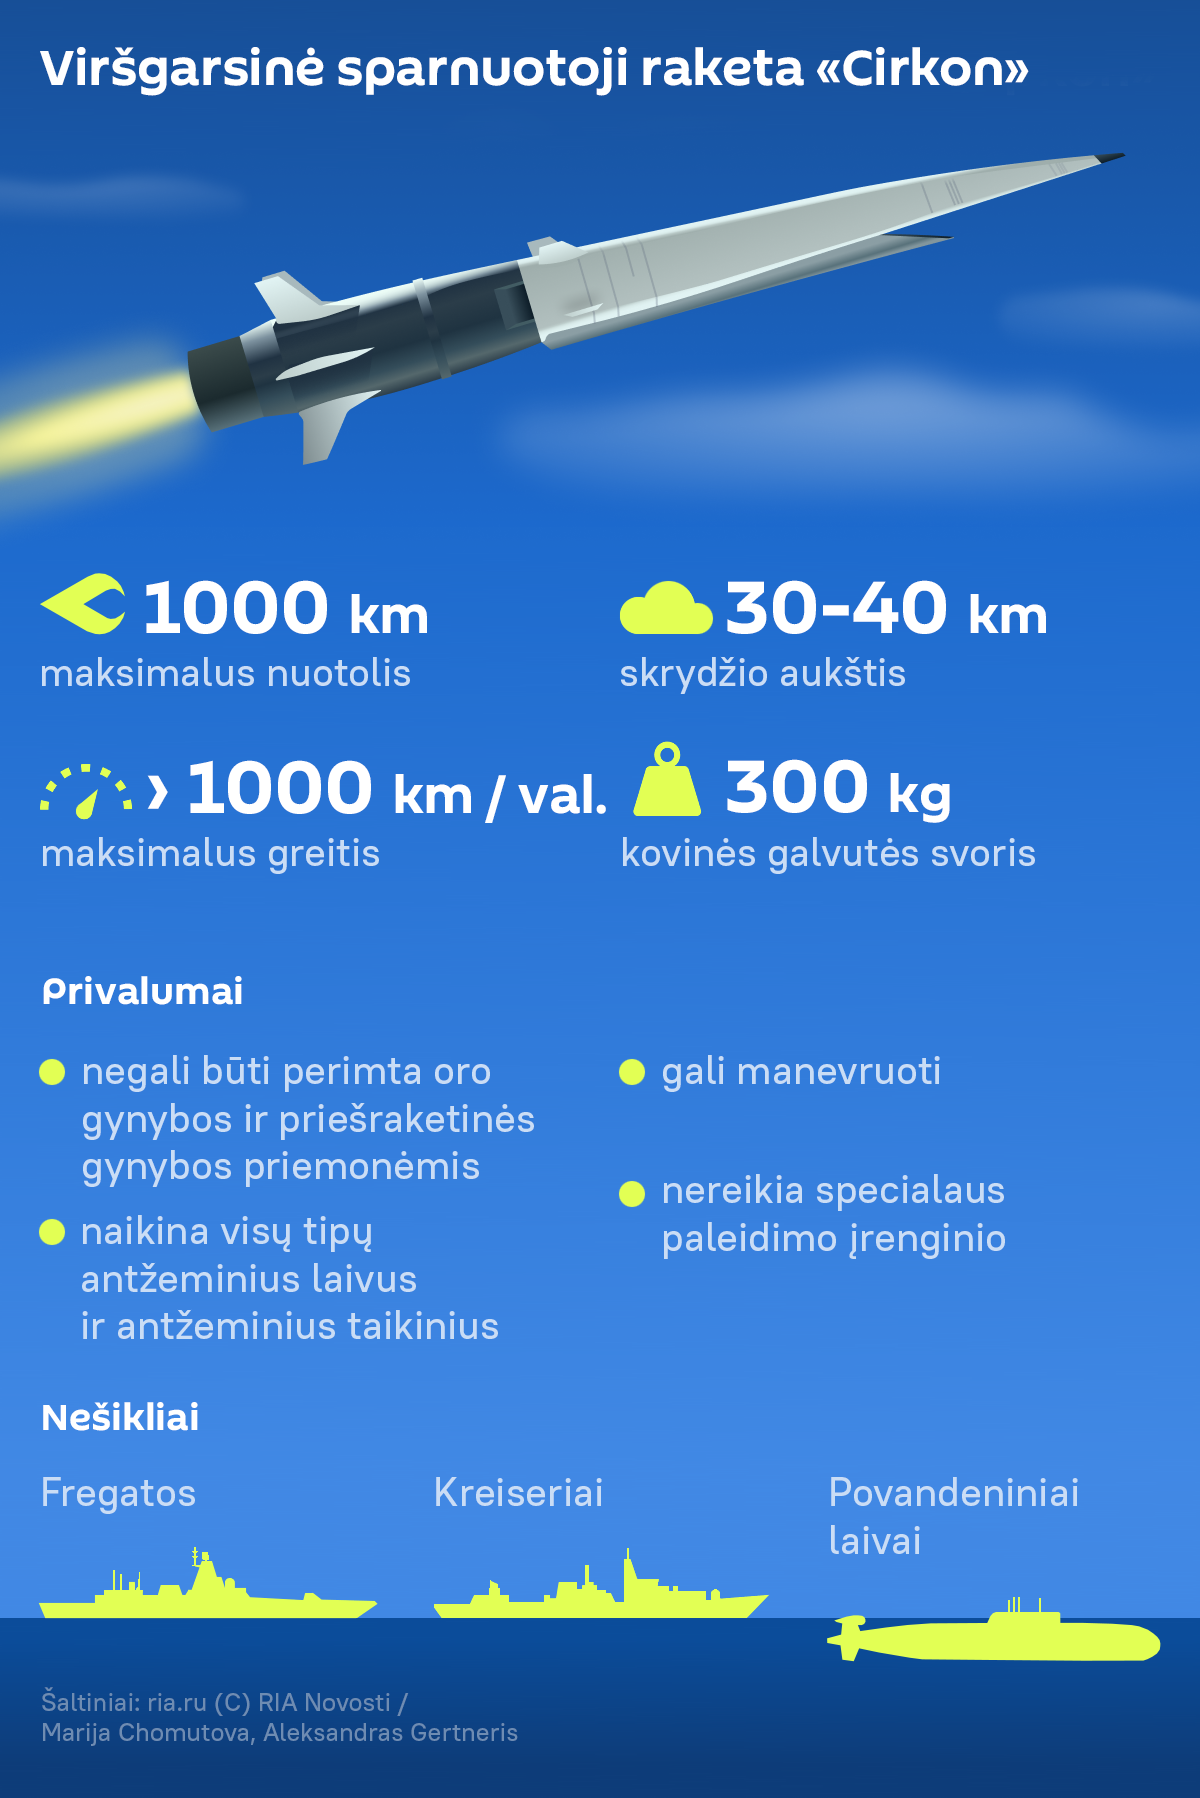 Viršgarsinė sparnuotoji raketa „Cirkon“ - Sputnik Lietuva